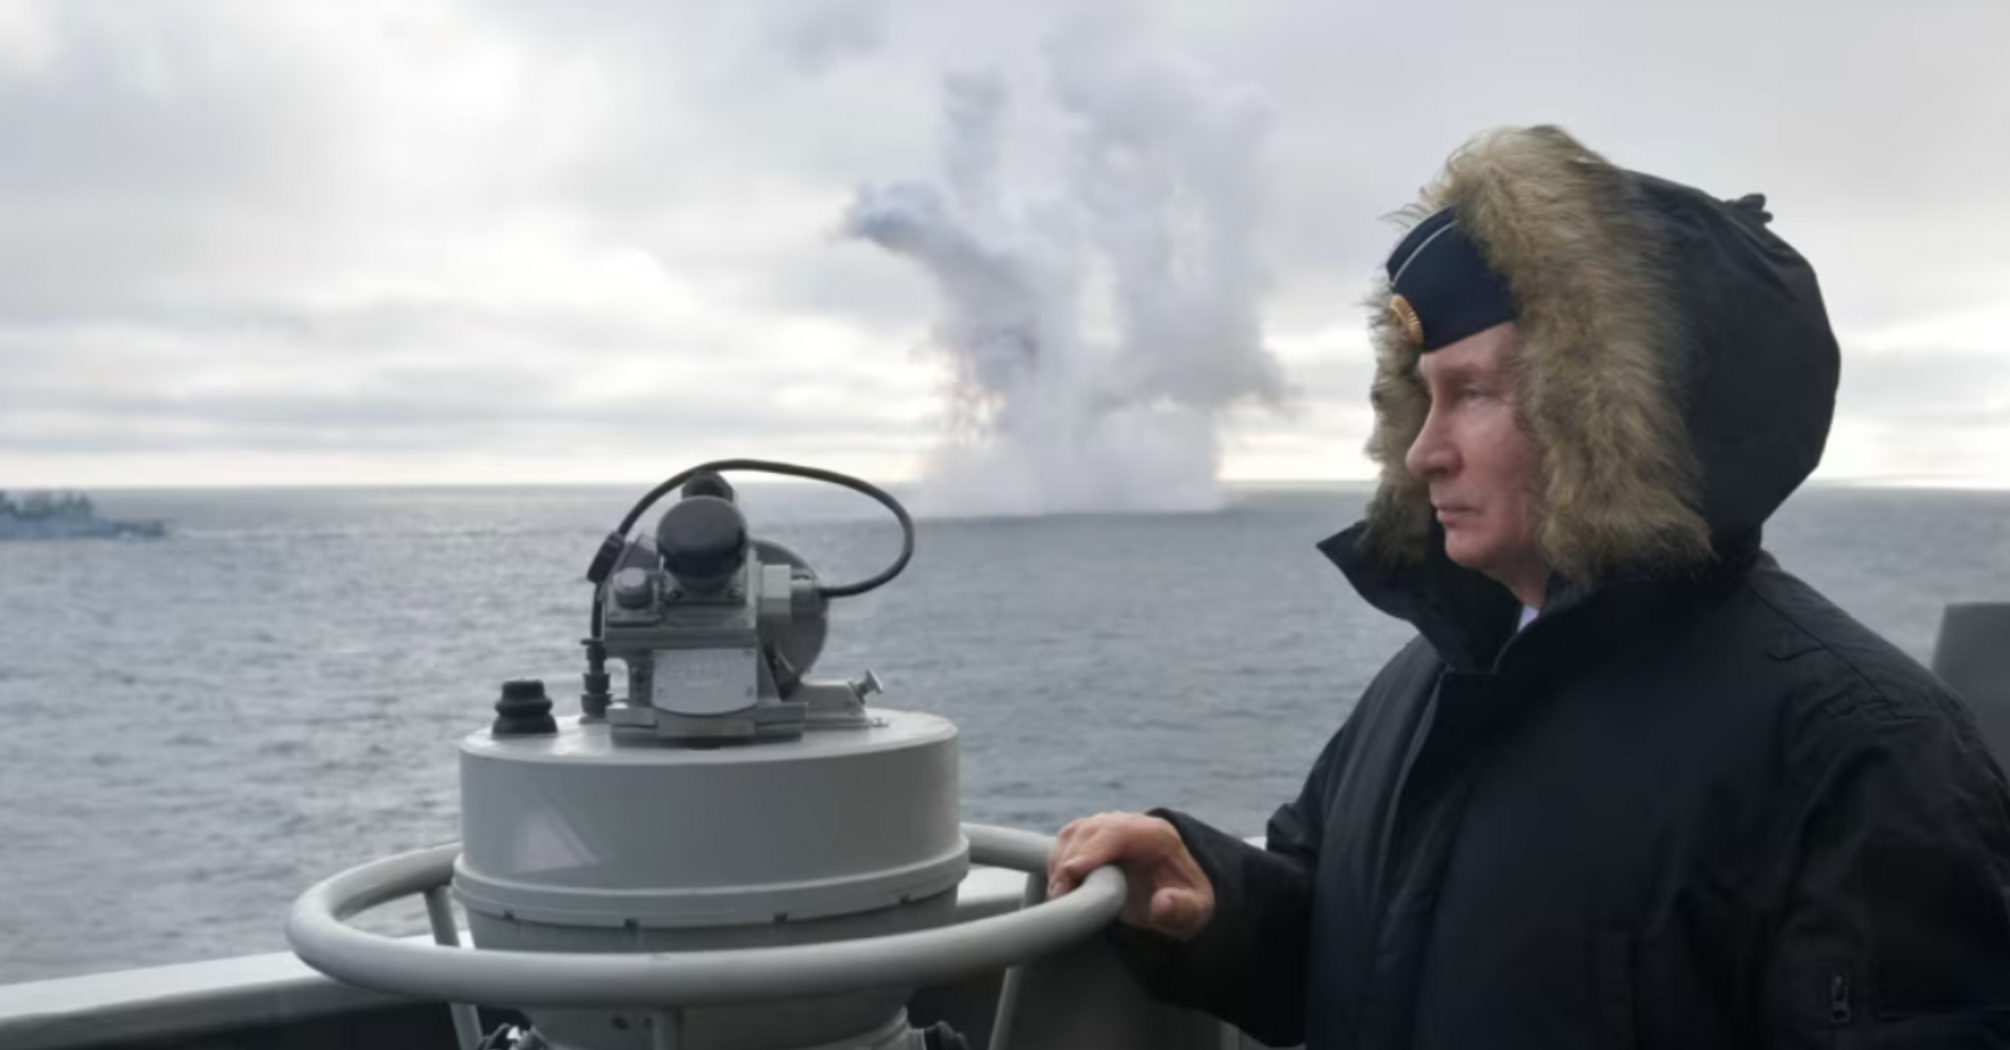 Росія змінює морські кордони. Якщо Путіна не зупиняють, він іде далі